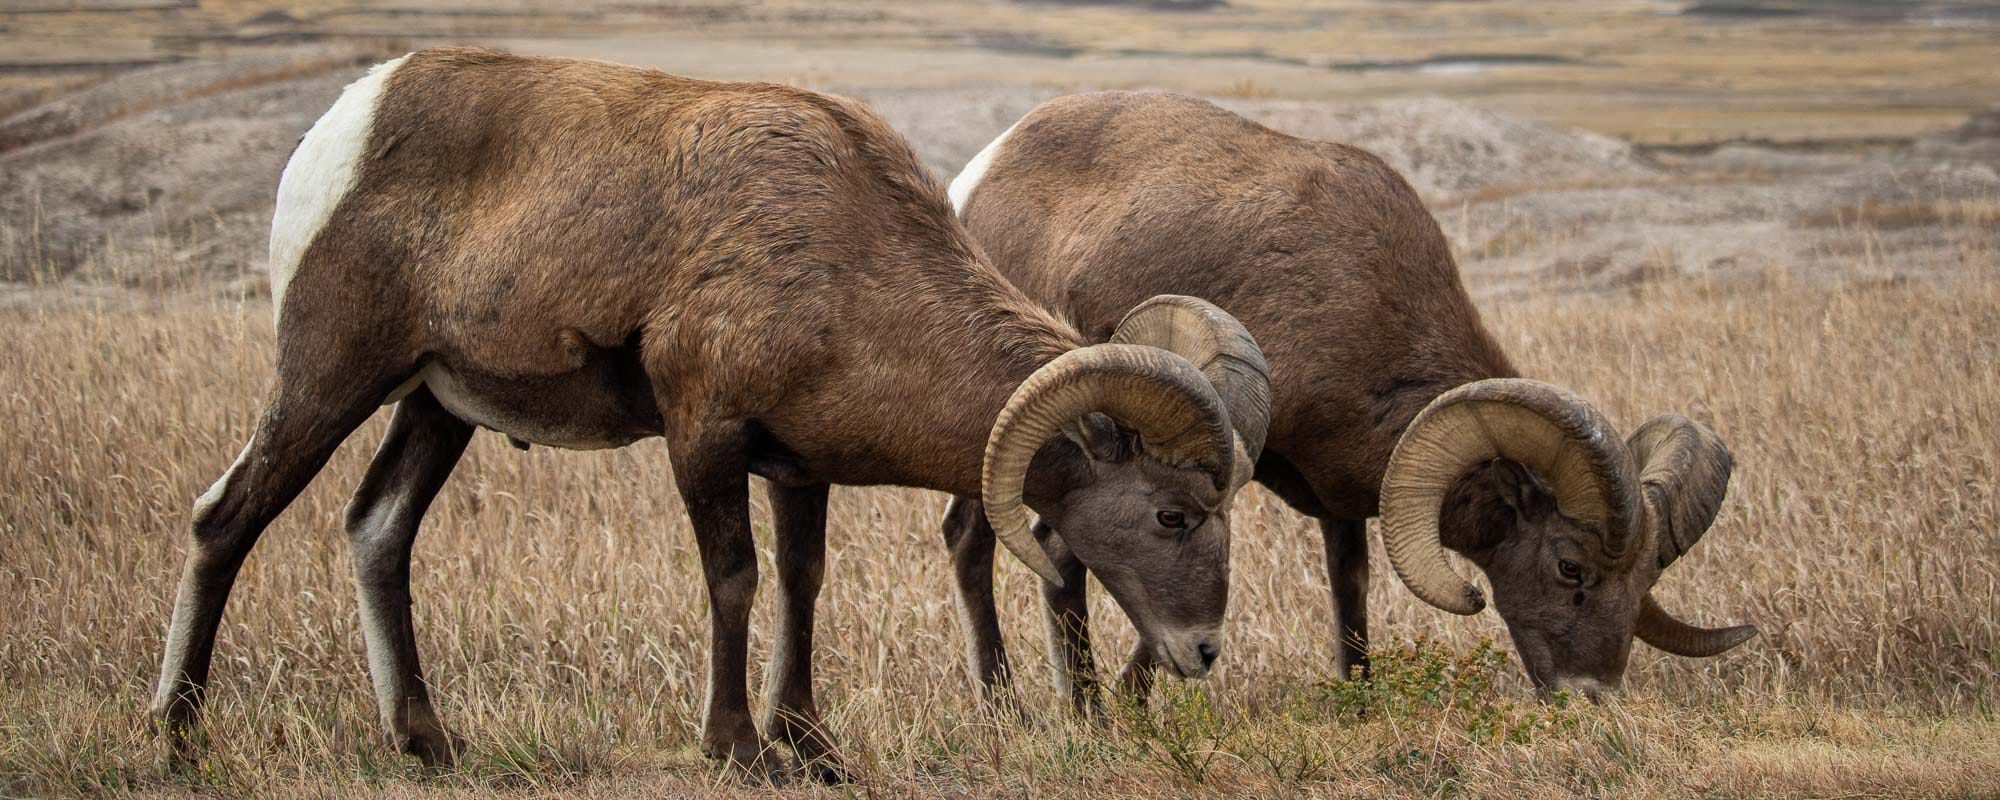 Bighorn sheep on the Badlands Loop Road, Badlands National Park, South Dakota